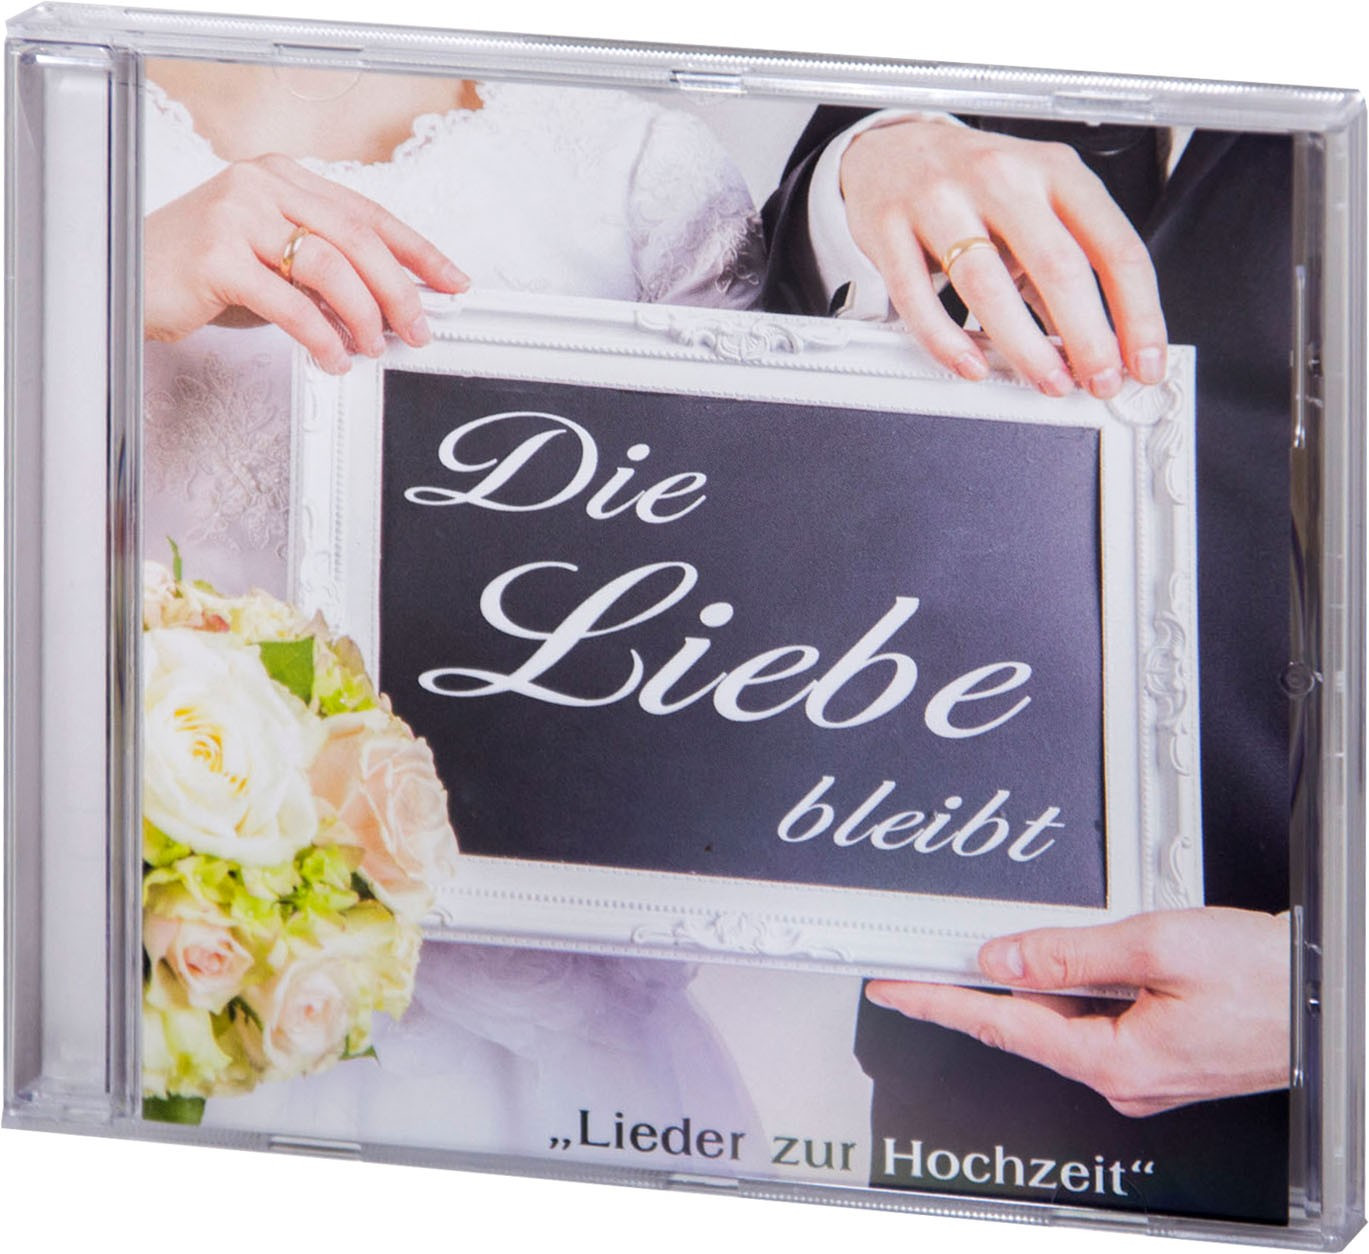 Umgeschriebene Lieder Zur Hochzeit
 Die Liebe bleibt Lieder zur Hochzeit Audio CD